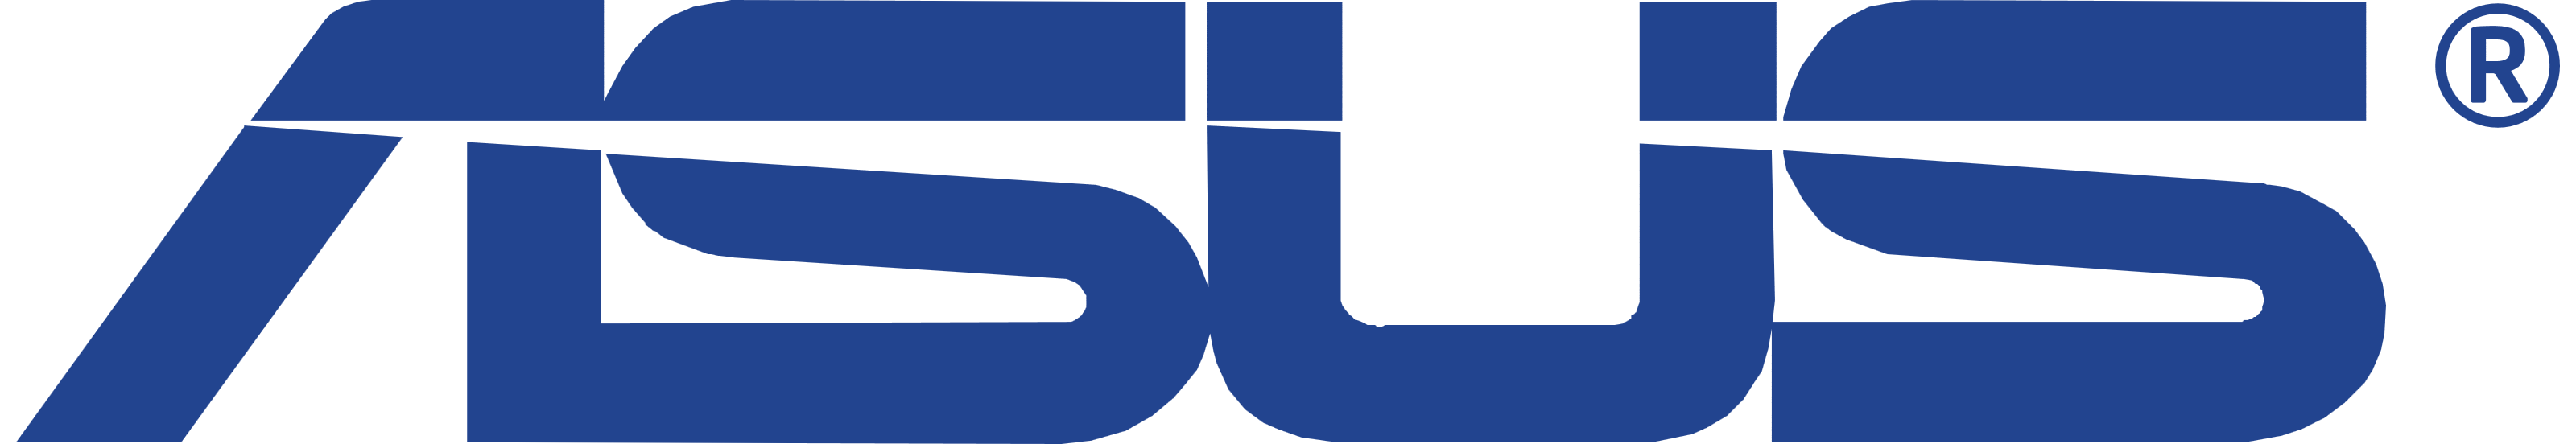 Asus – Logos Download